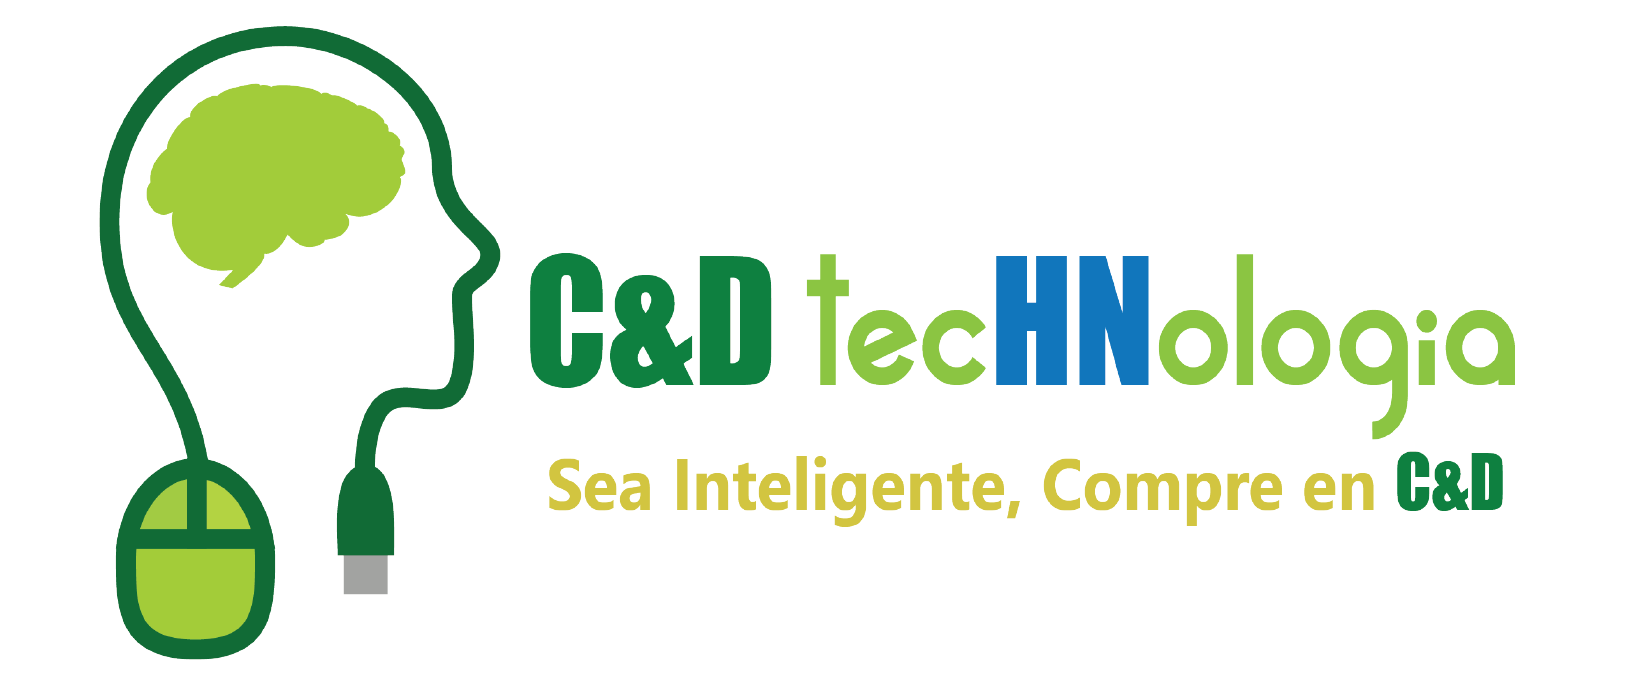 logo C y D Technologia